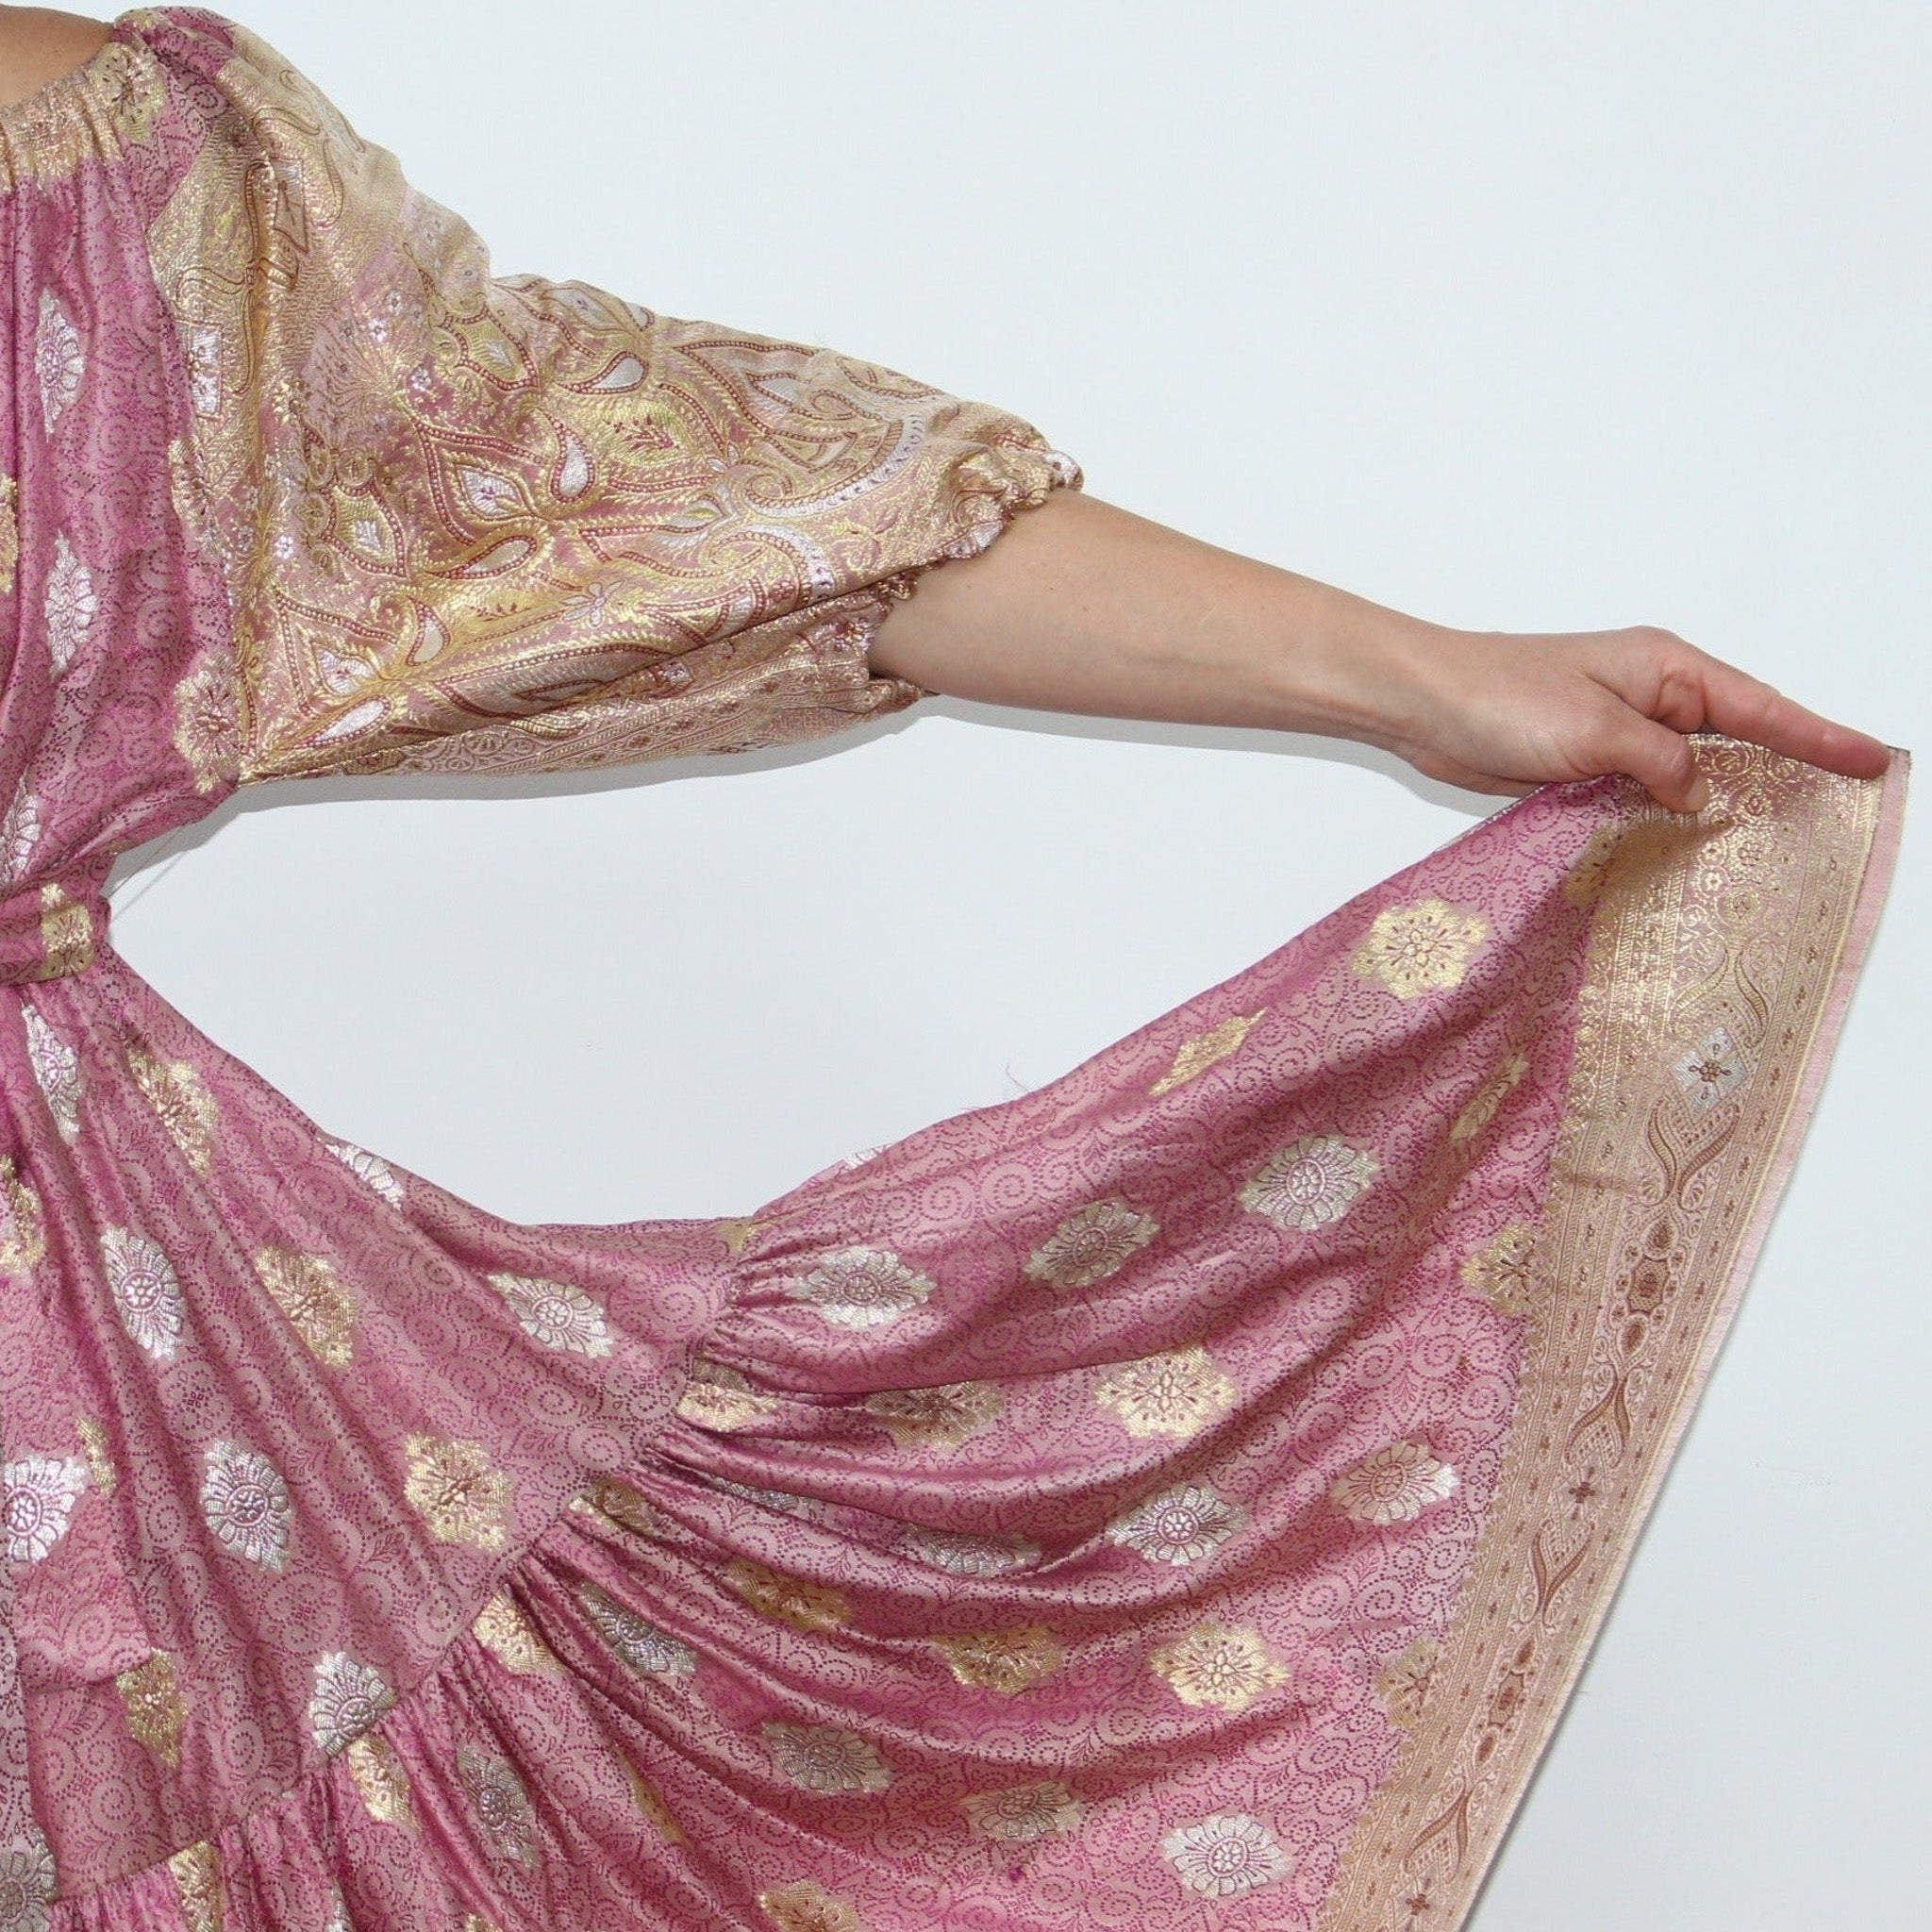 Ausus - Vintage Silk Sari Rose Quartz Pink Maxi Dress close up